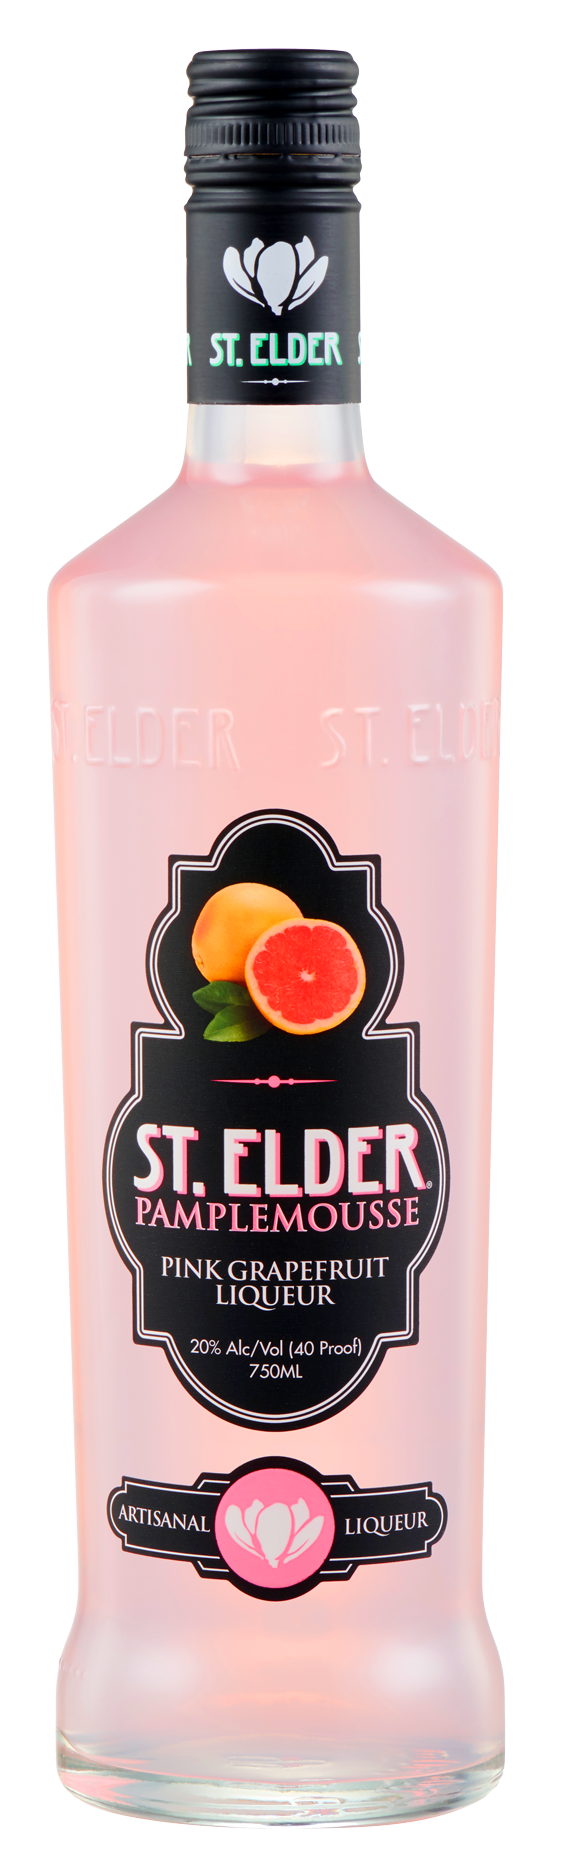 ST. ELDER PAMPLEMOUSSE LIQUEUR Cordials & Liqueurs – American BeverageWarehouse